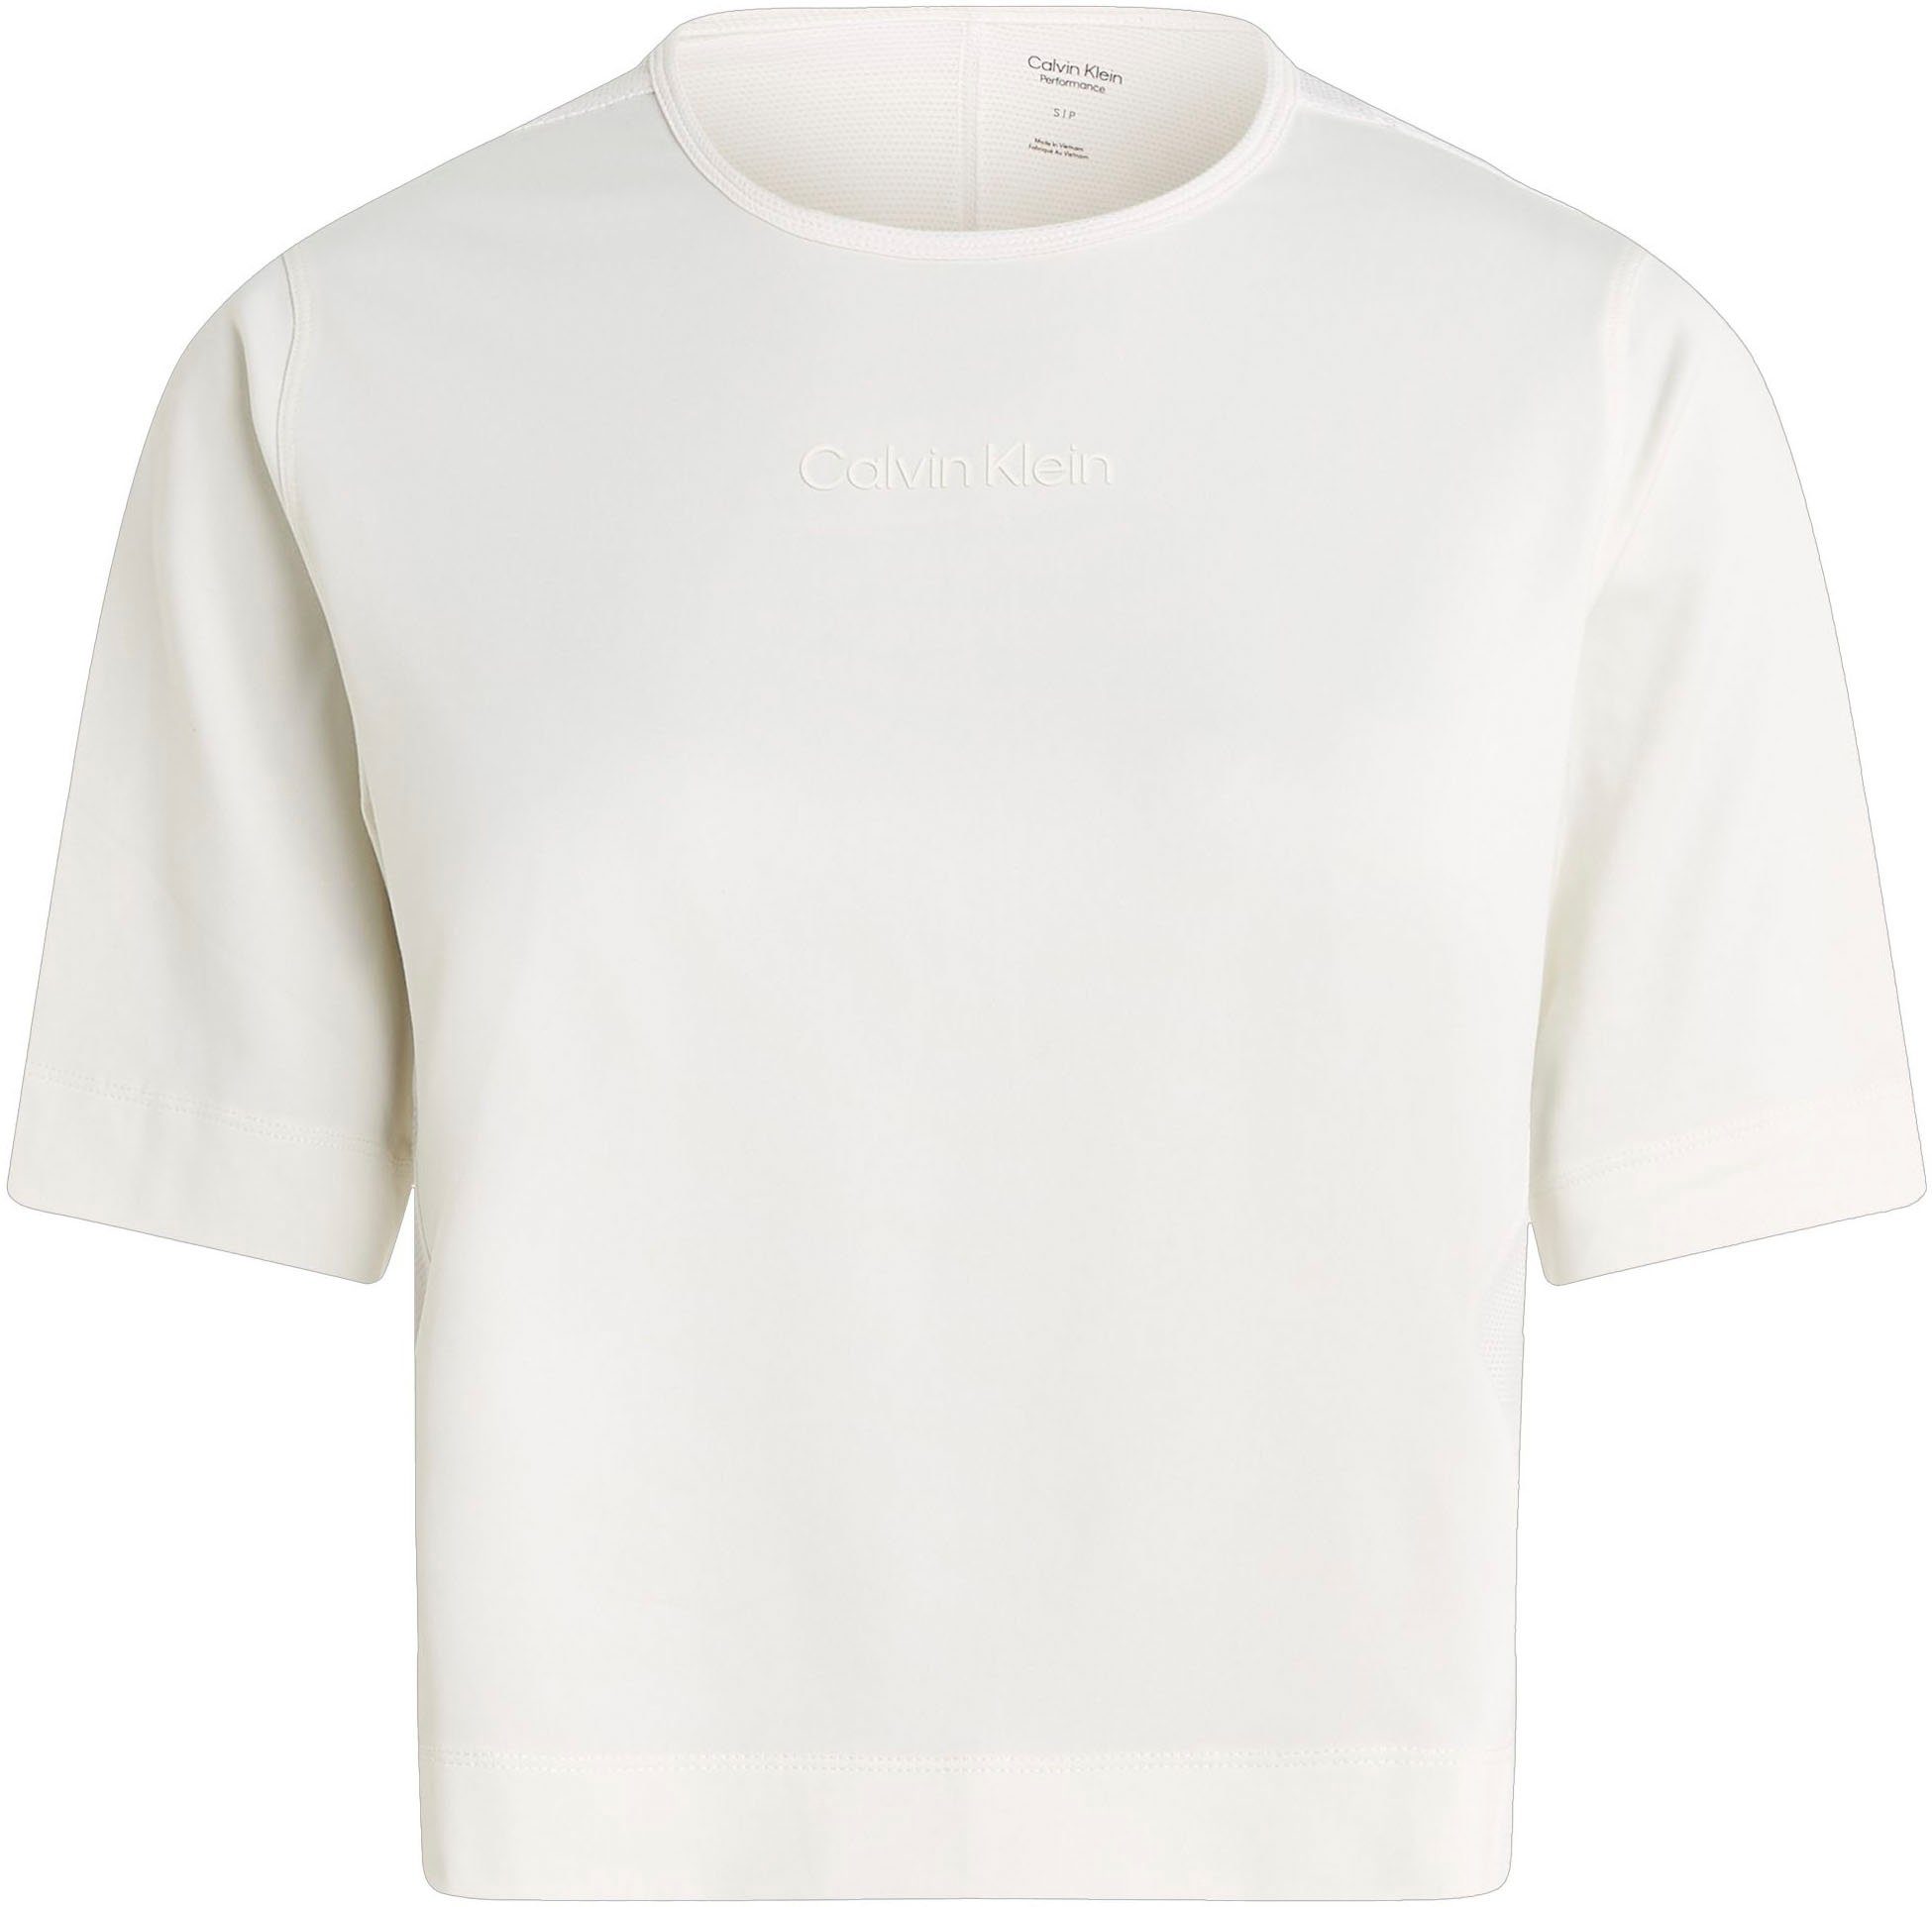 T-Shirt Suede Klein Calvin Sport White